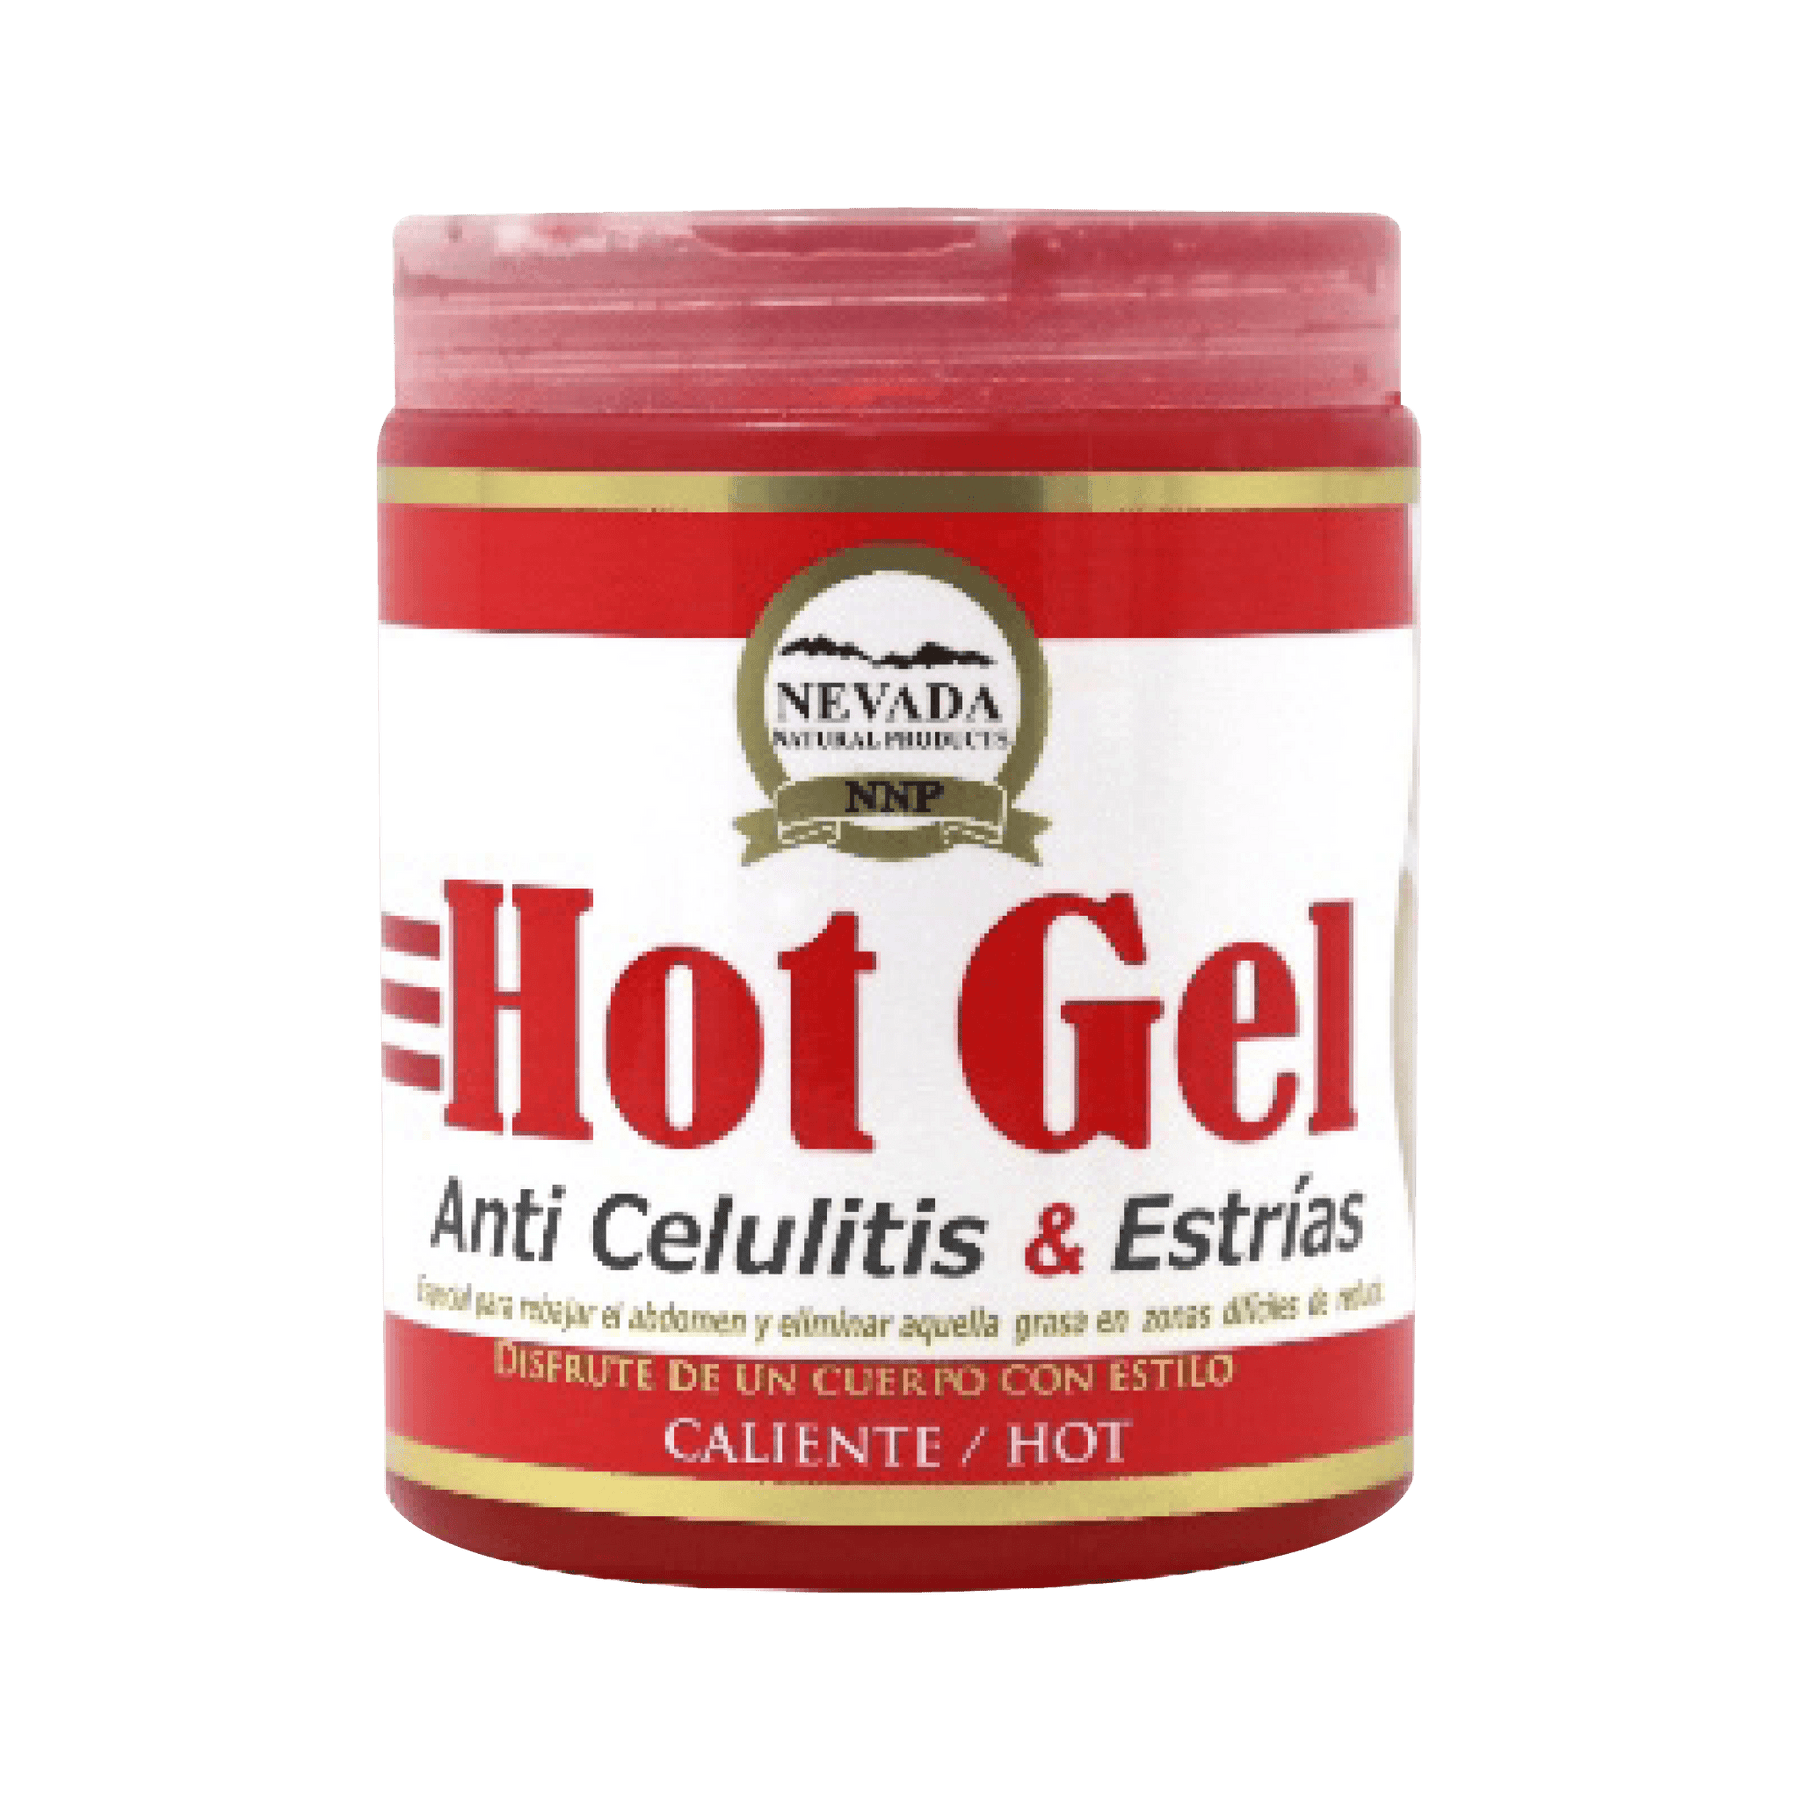 50 Gel anti celulitis · 60 g - Comprar en Hashim